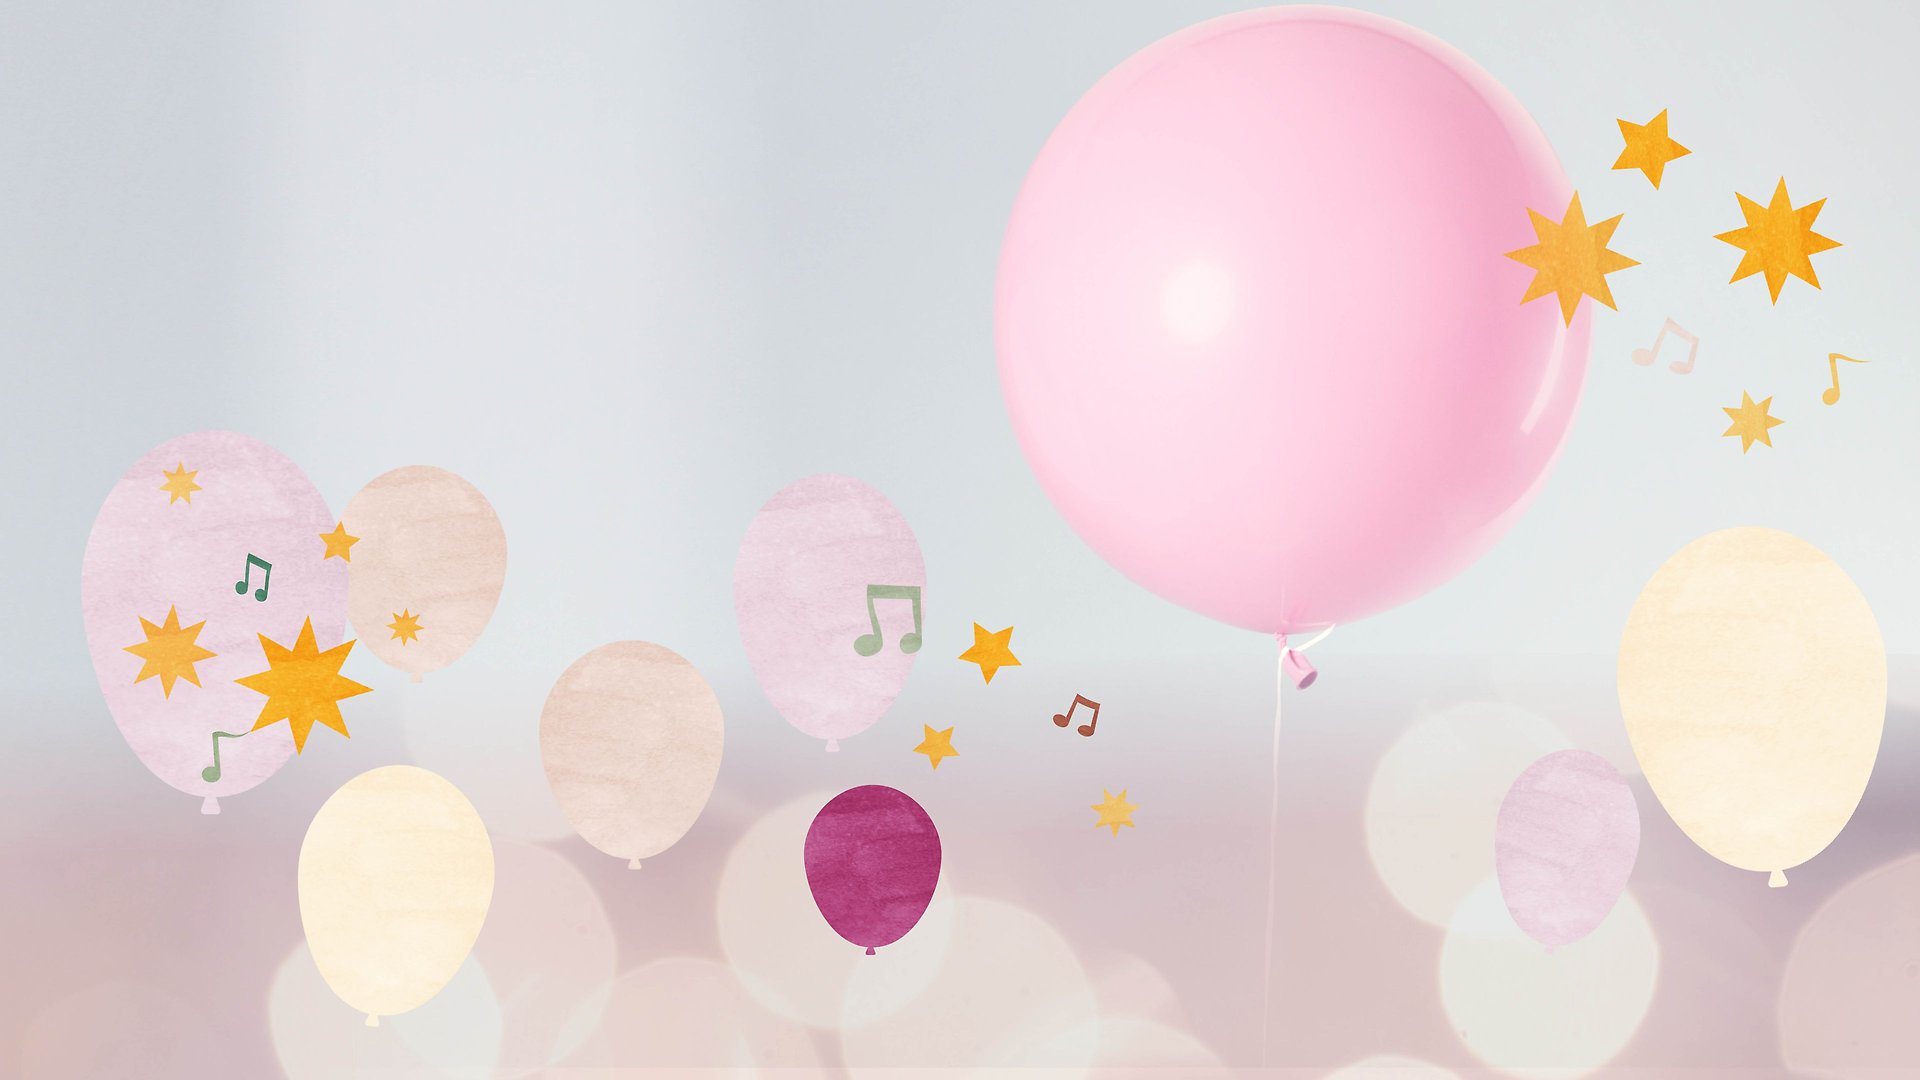 Illustration med rosa och gula ballonger, stjärnor och noter